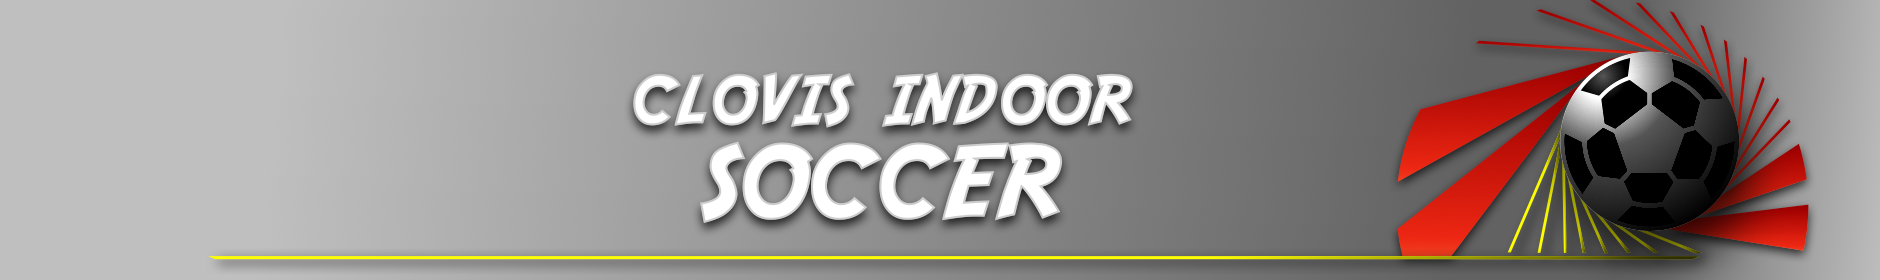 Clovis Indoor Soccer